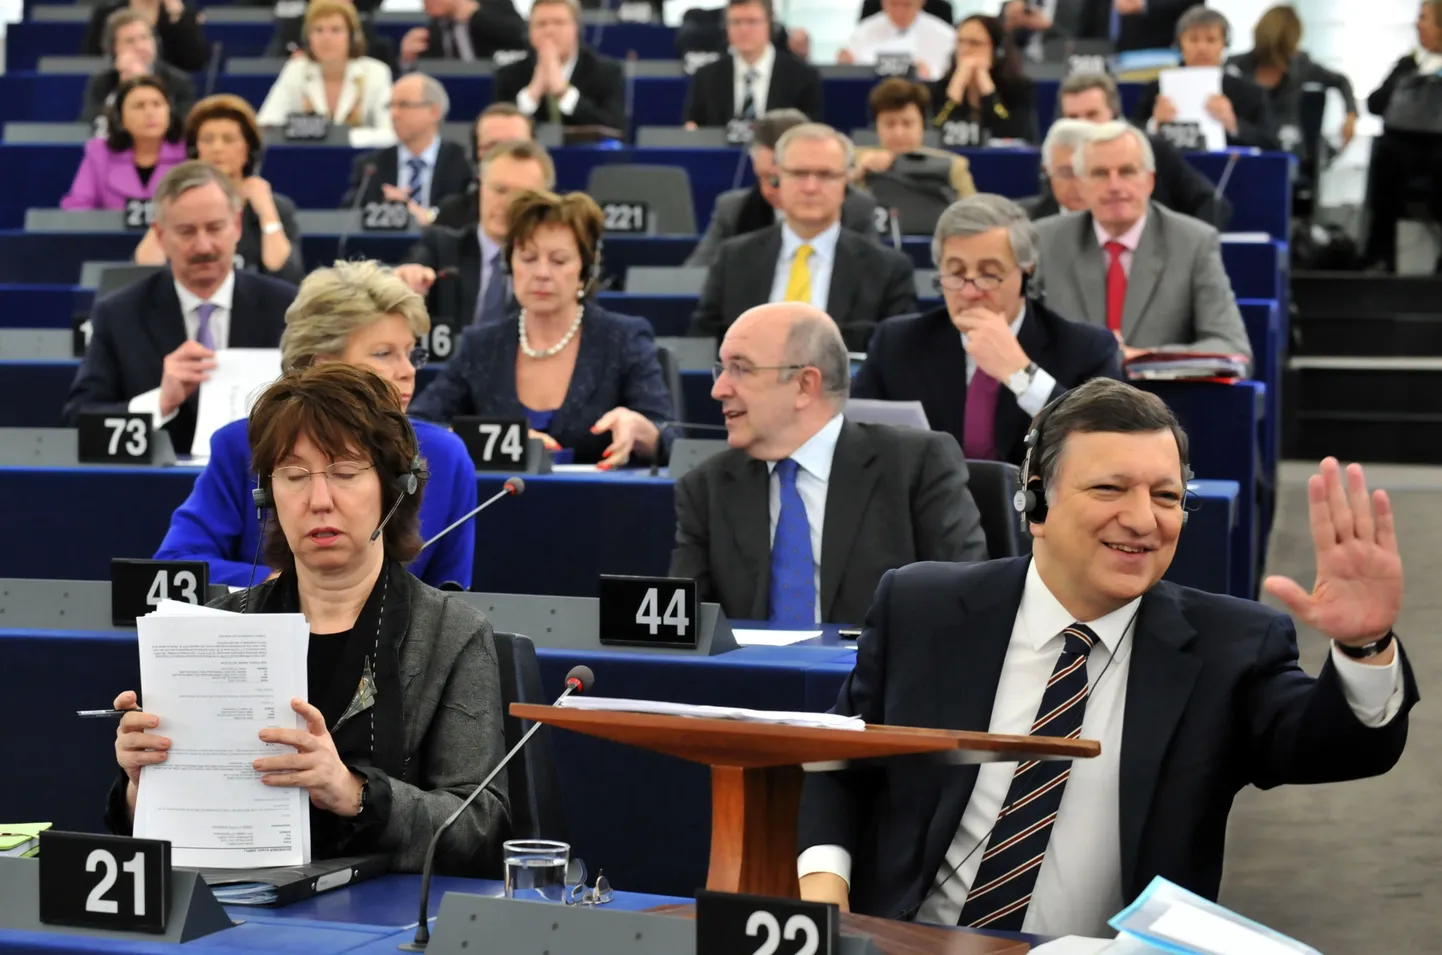 José Manuel Barroso (ees paremal) koos Euroopa Komisjoni volinikega täna Euroopa Parlamendis. Siim Kallas istub pildi vasakus nurgas, kohal nr 73.